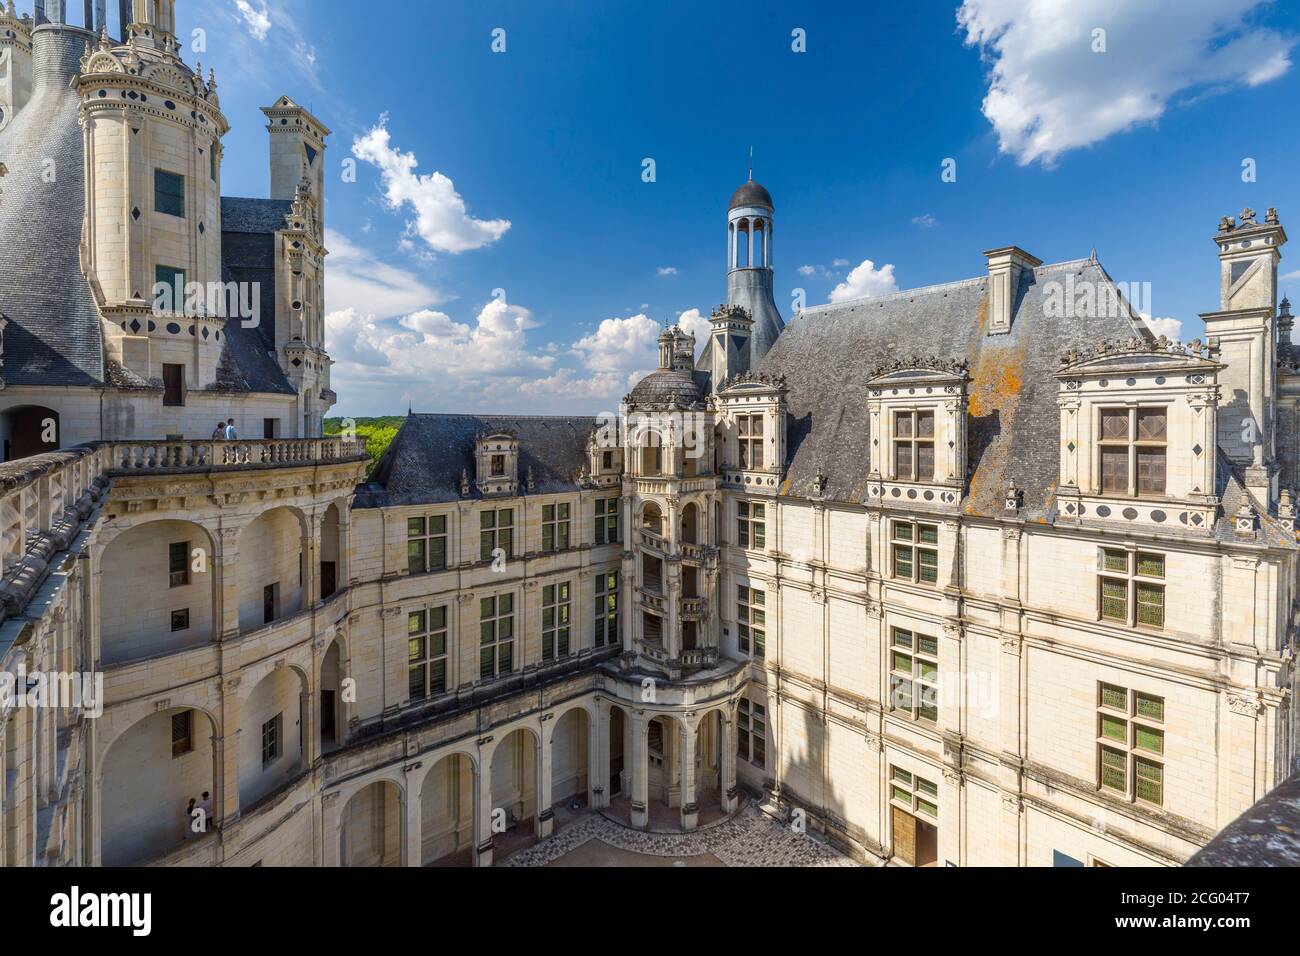 Francia, Loir et Cher, valle del Loira catalogado como Patrimonio de la Humanidad por la UNESCO, Chambord, el castillo de Chambord, construido entre 1519 y 1538, el estilo renacentista Foto de stock